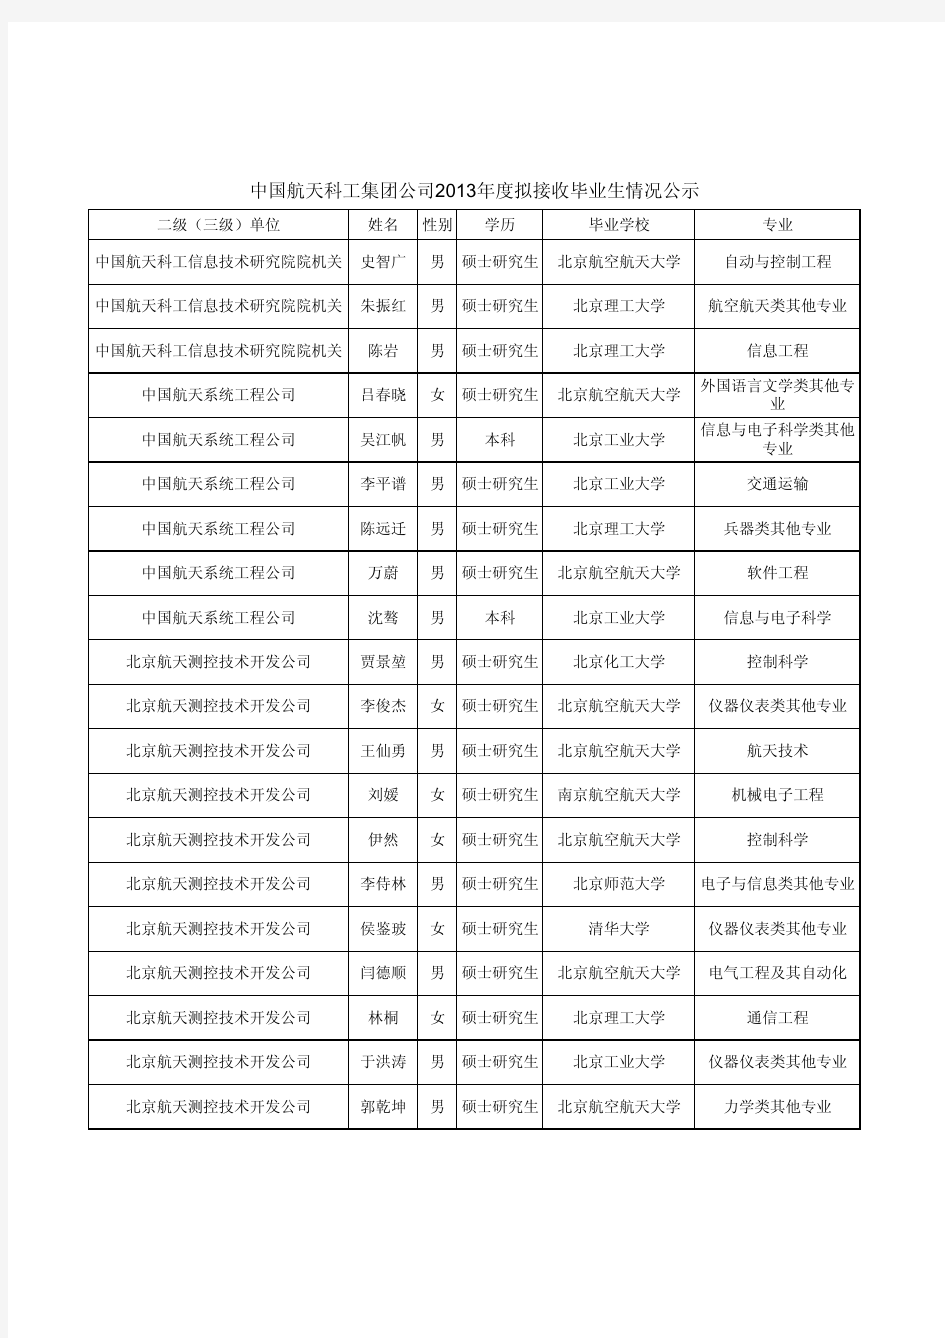 中国航天科工集团公司2013年拟接收毕业生名单